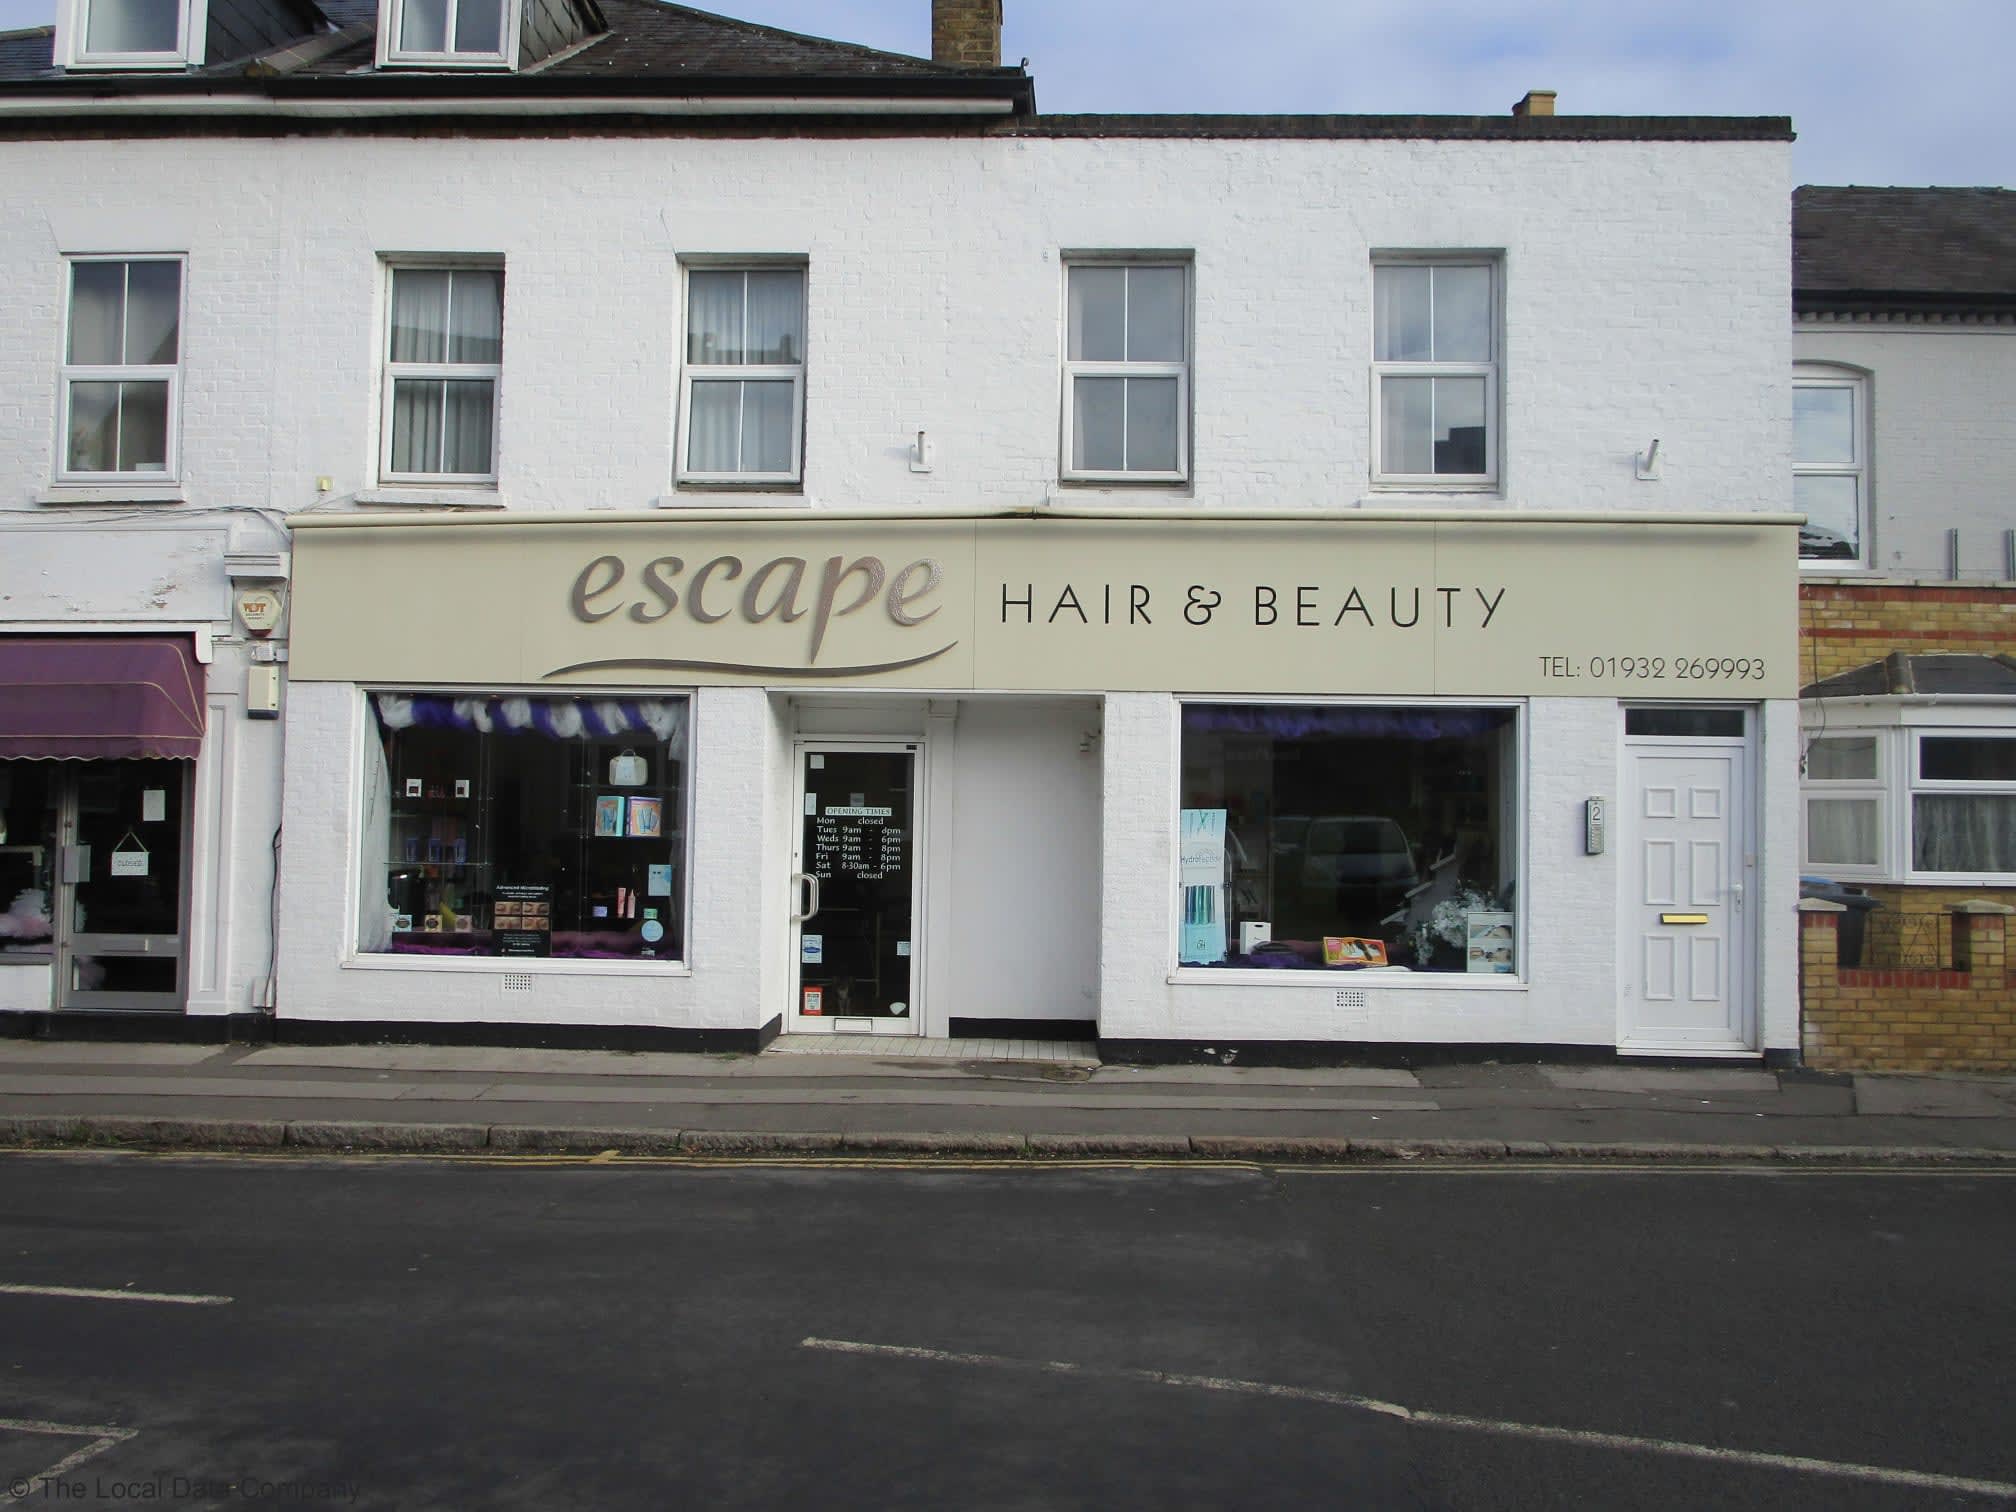 Escape Hair & Beauty Walton-On-Thames 01932 269993